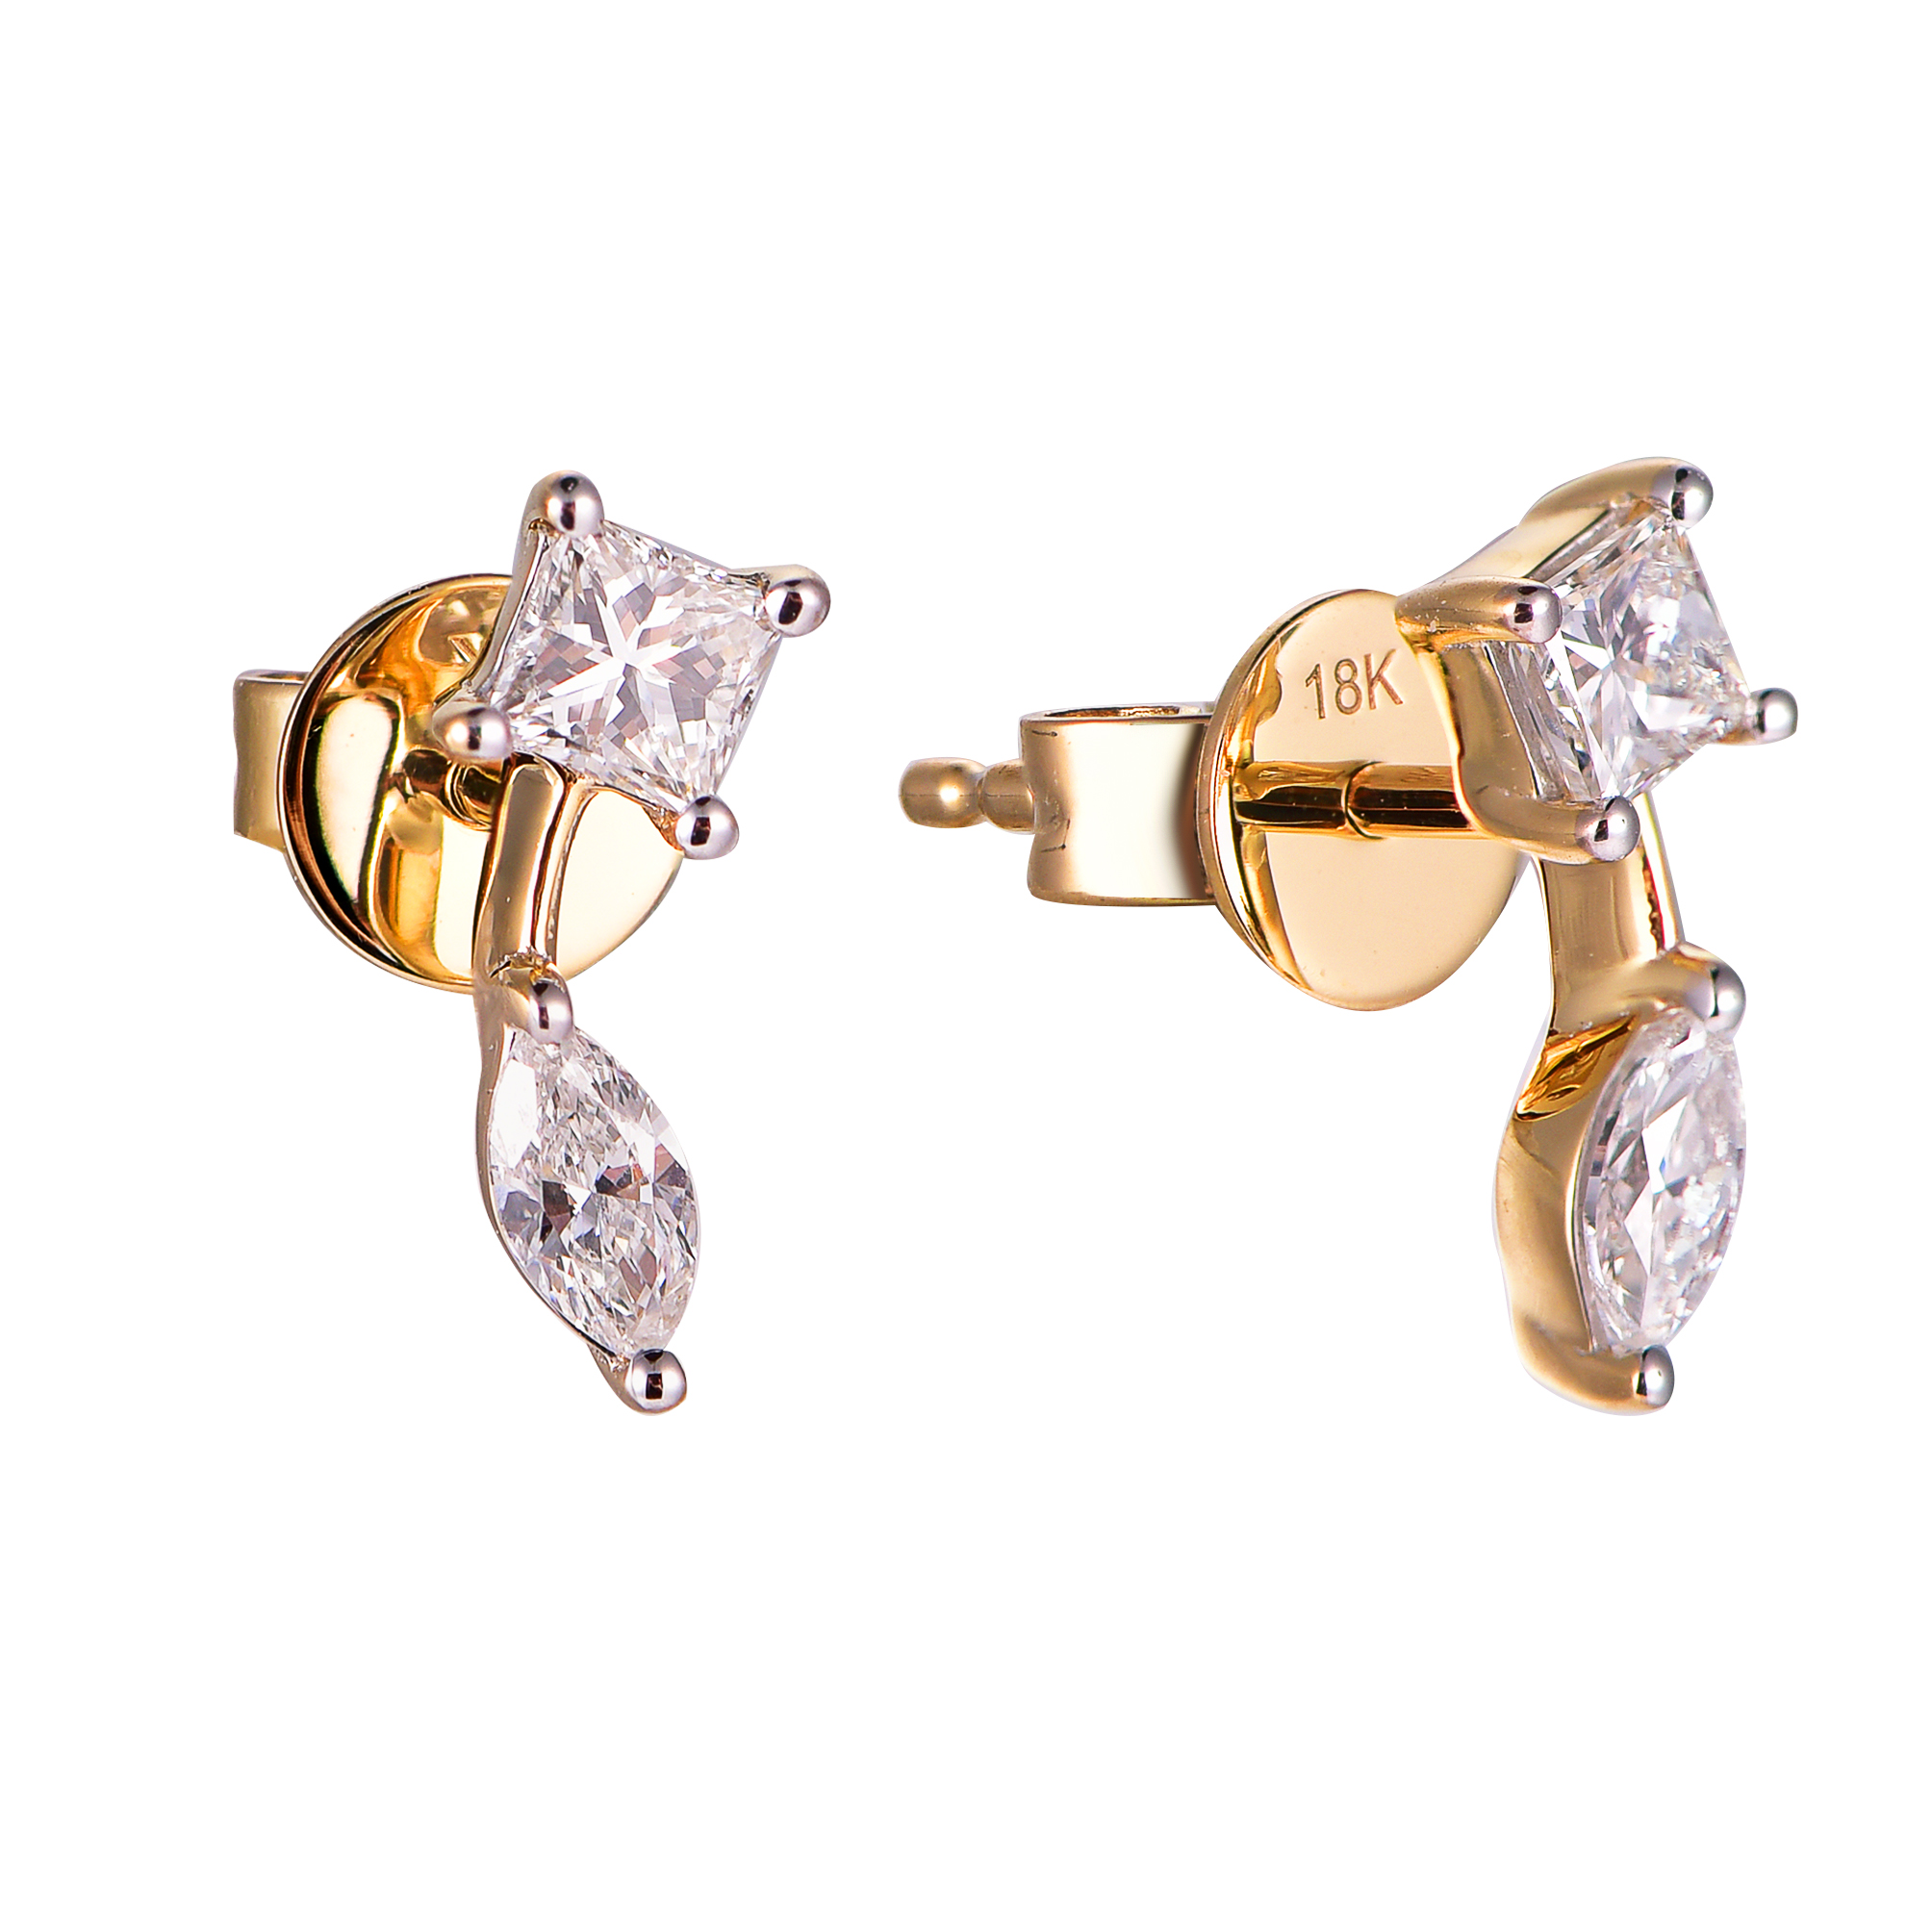 DI45555E 18K yellow gold fancy diamond earrings